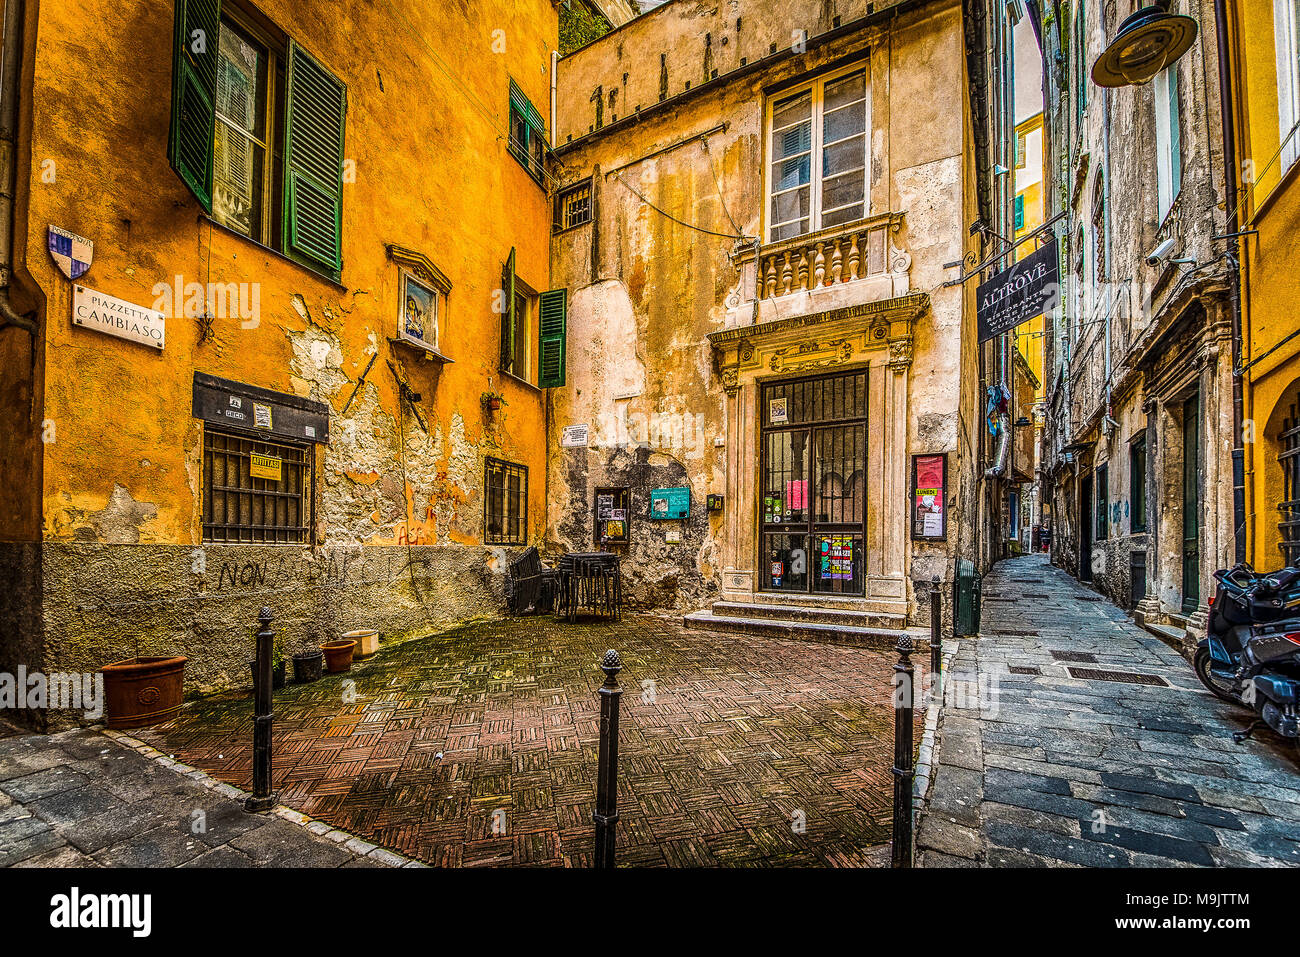 Italy Liguria Genoa Old city -   Piazza Cambiaso Stock Photo